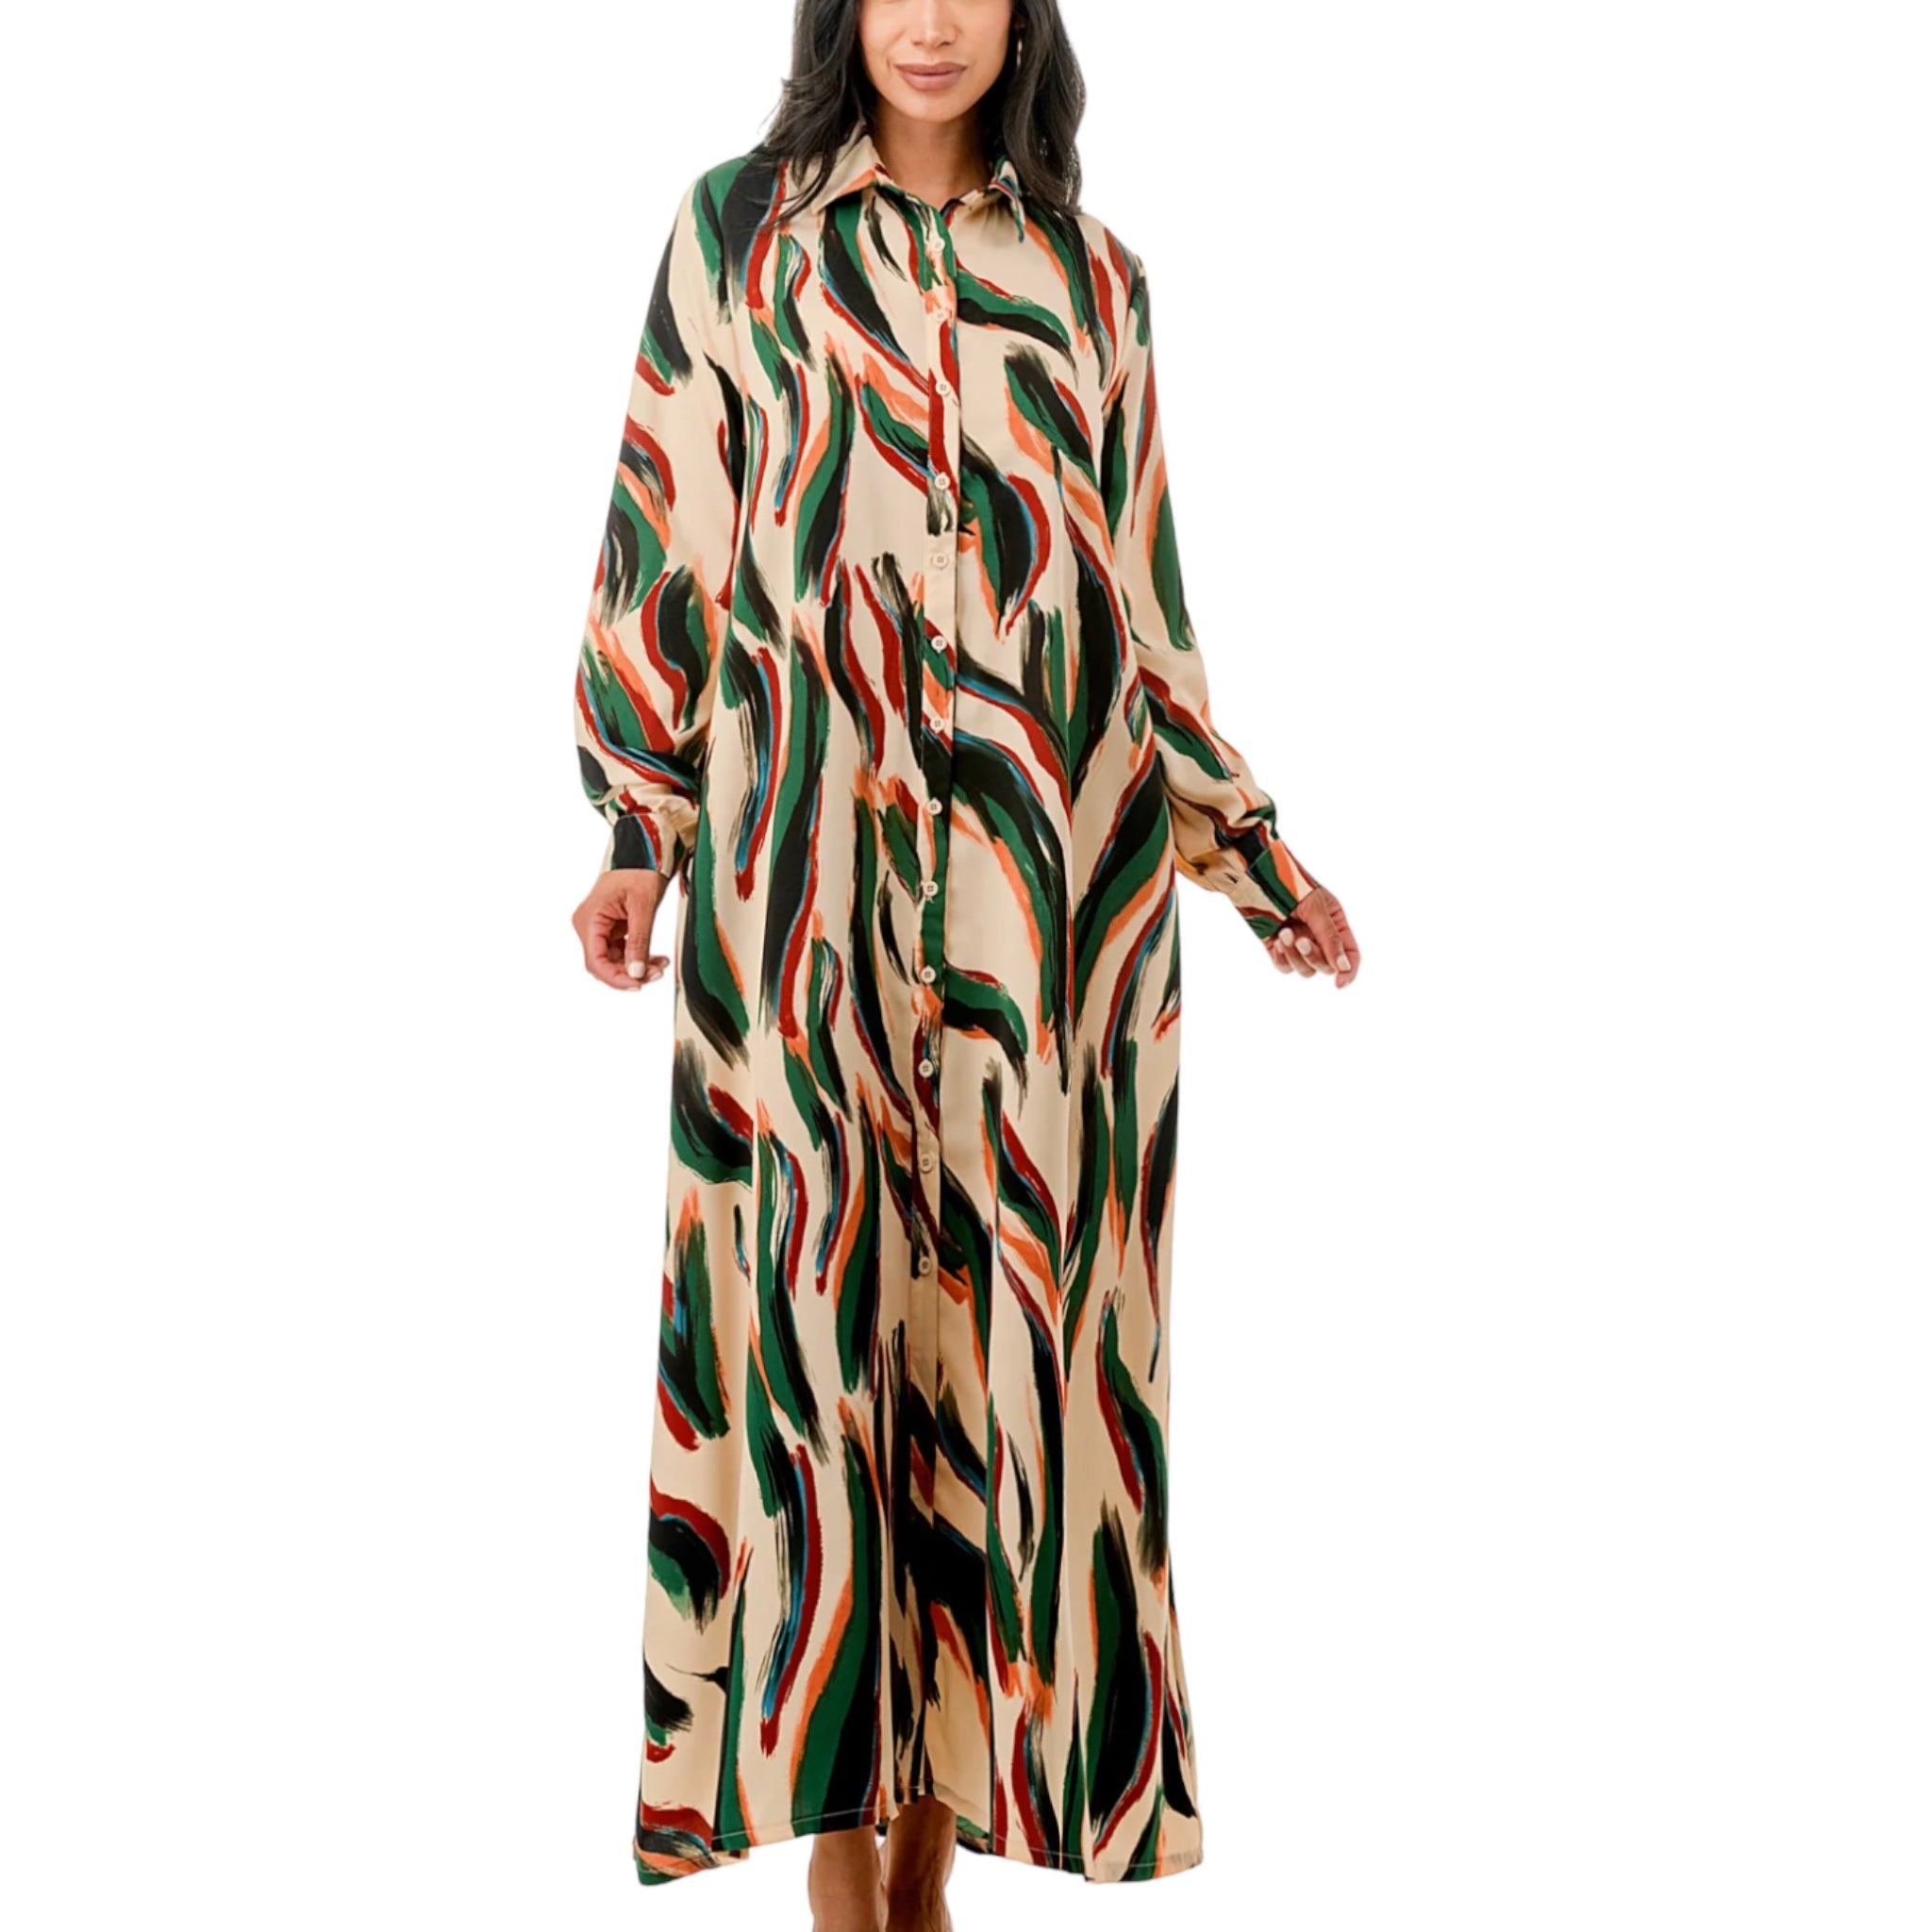 Women's Plus Size Brushed Long Sleeve Maxi Dress - Fabulously Dressed Boutique 